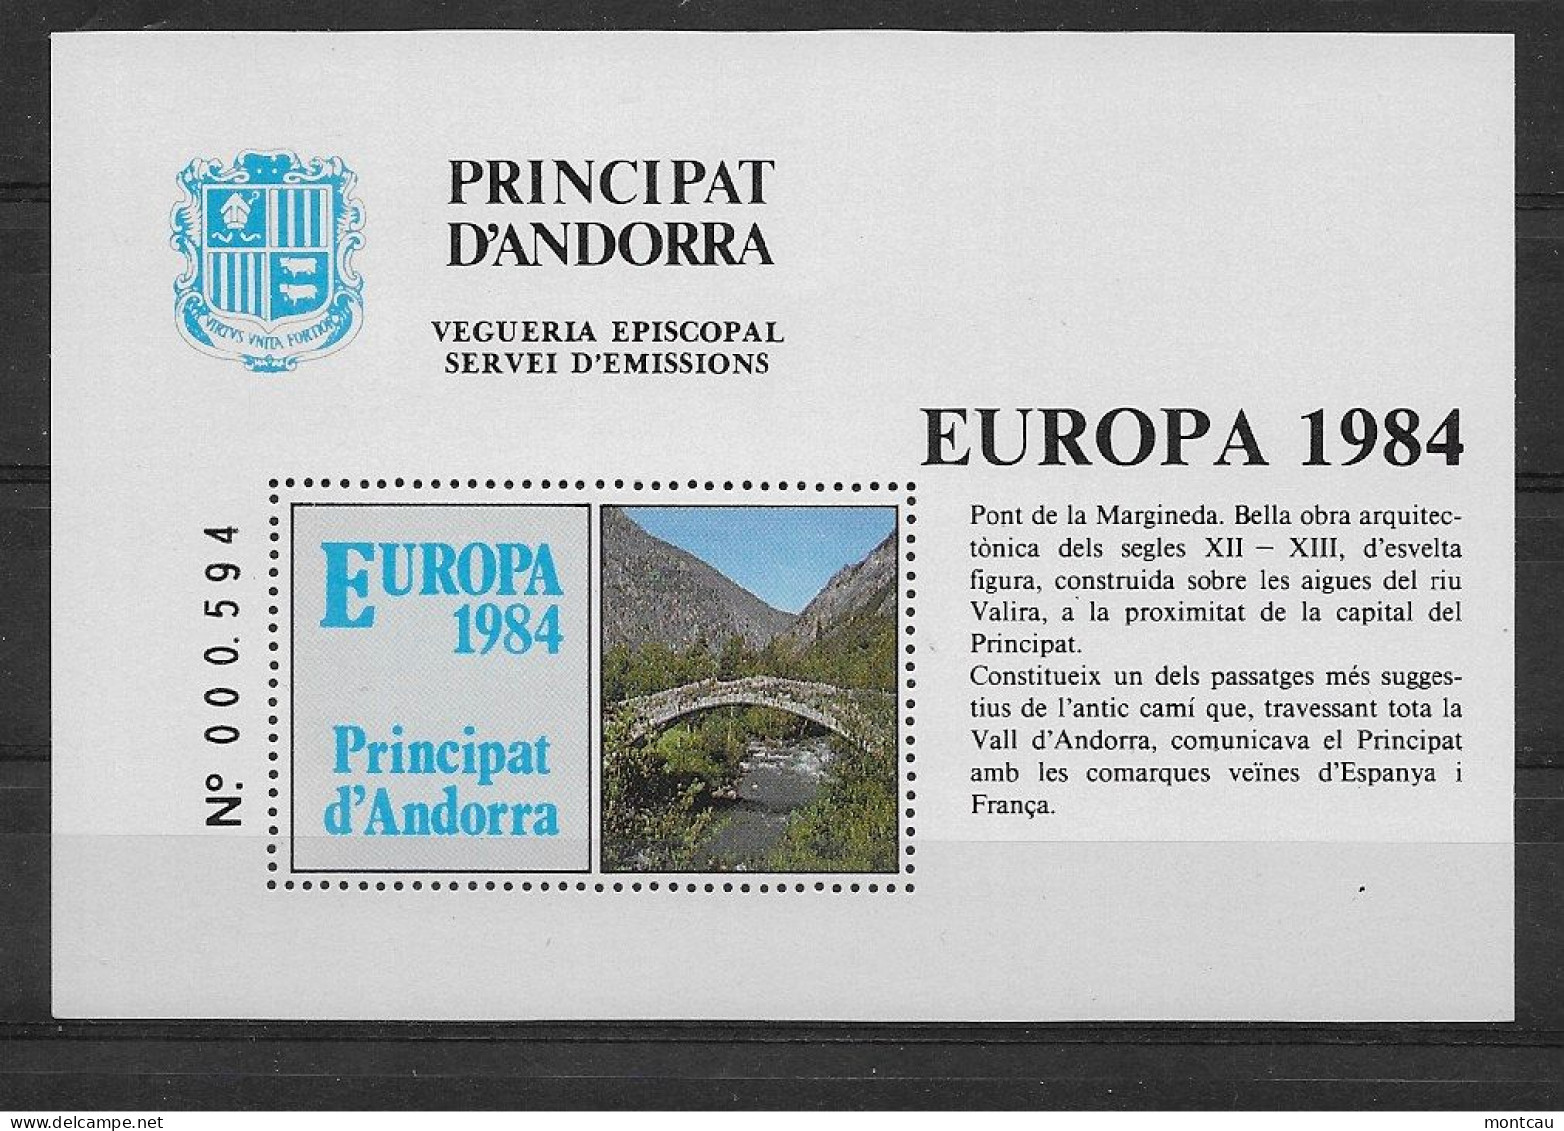 Andorra - 1984 - Vegueria Episcopal Europa - Episcopale Vignetten